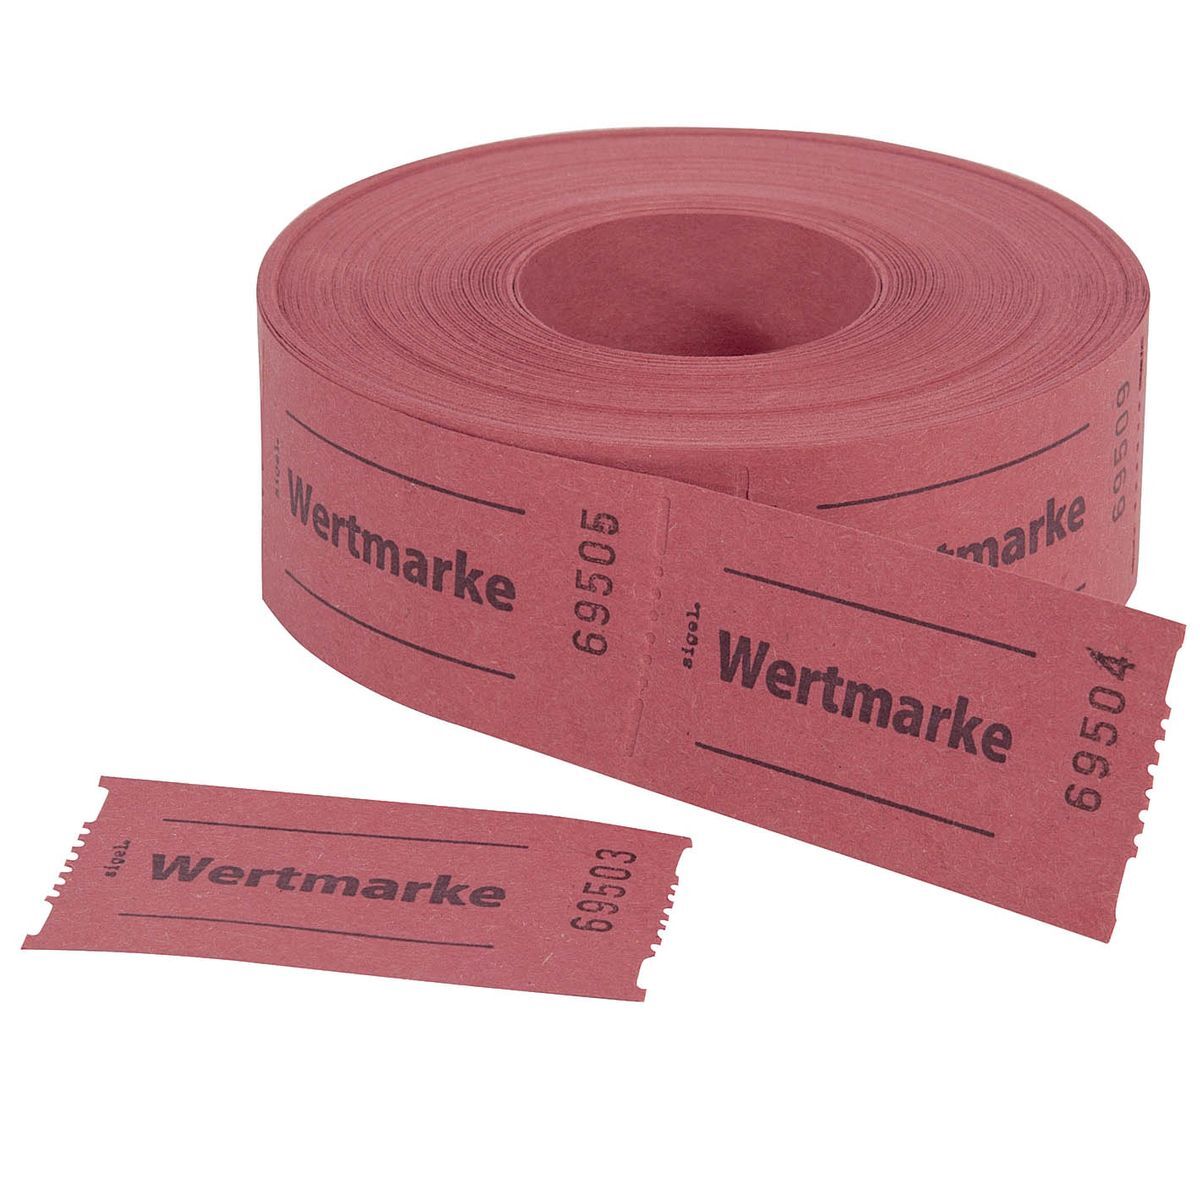 Gutscheinmarken-Rollen »Wertmarke« - rot, fortlaufend nummeriert, 60x30 mm, 500 Stück